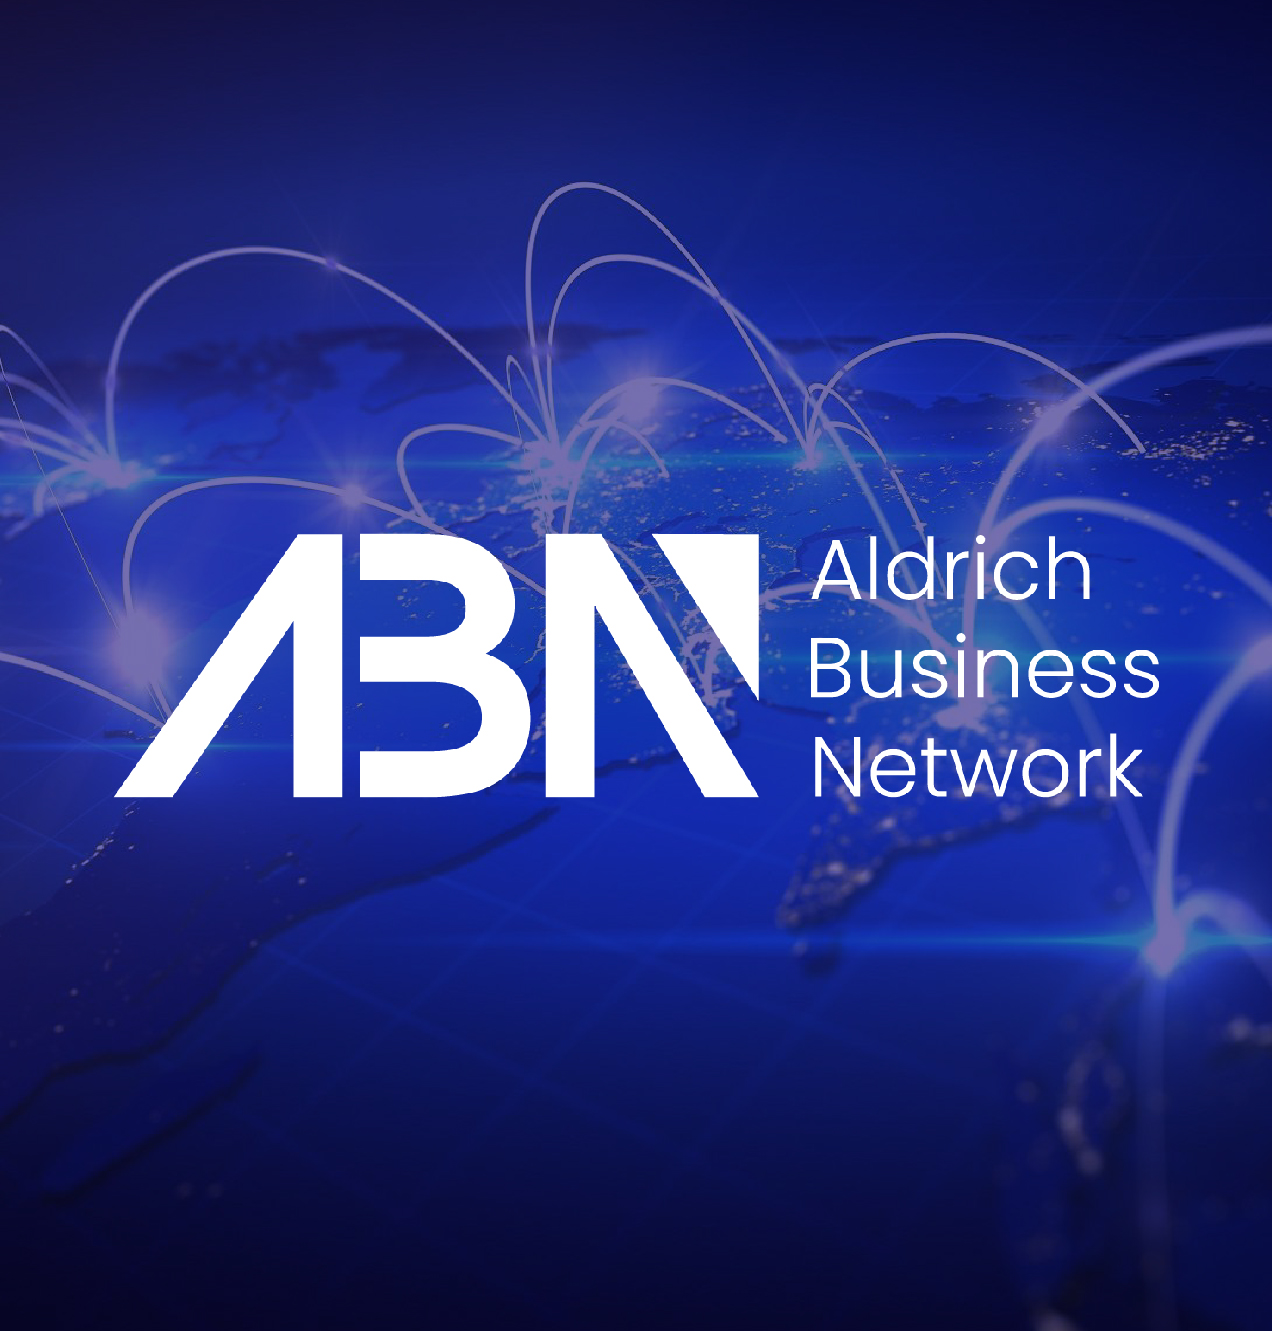 Aldrich Business Network